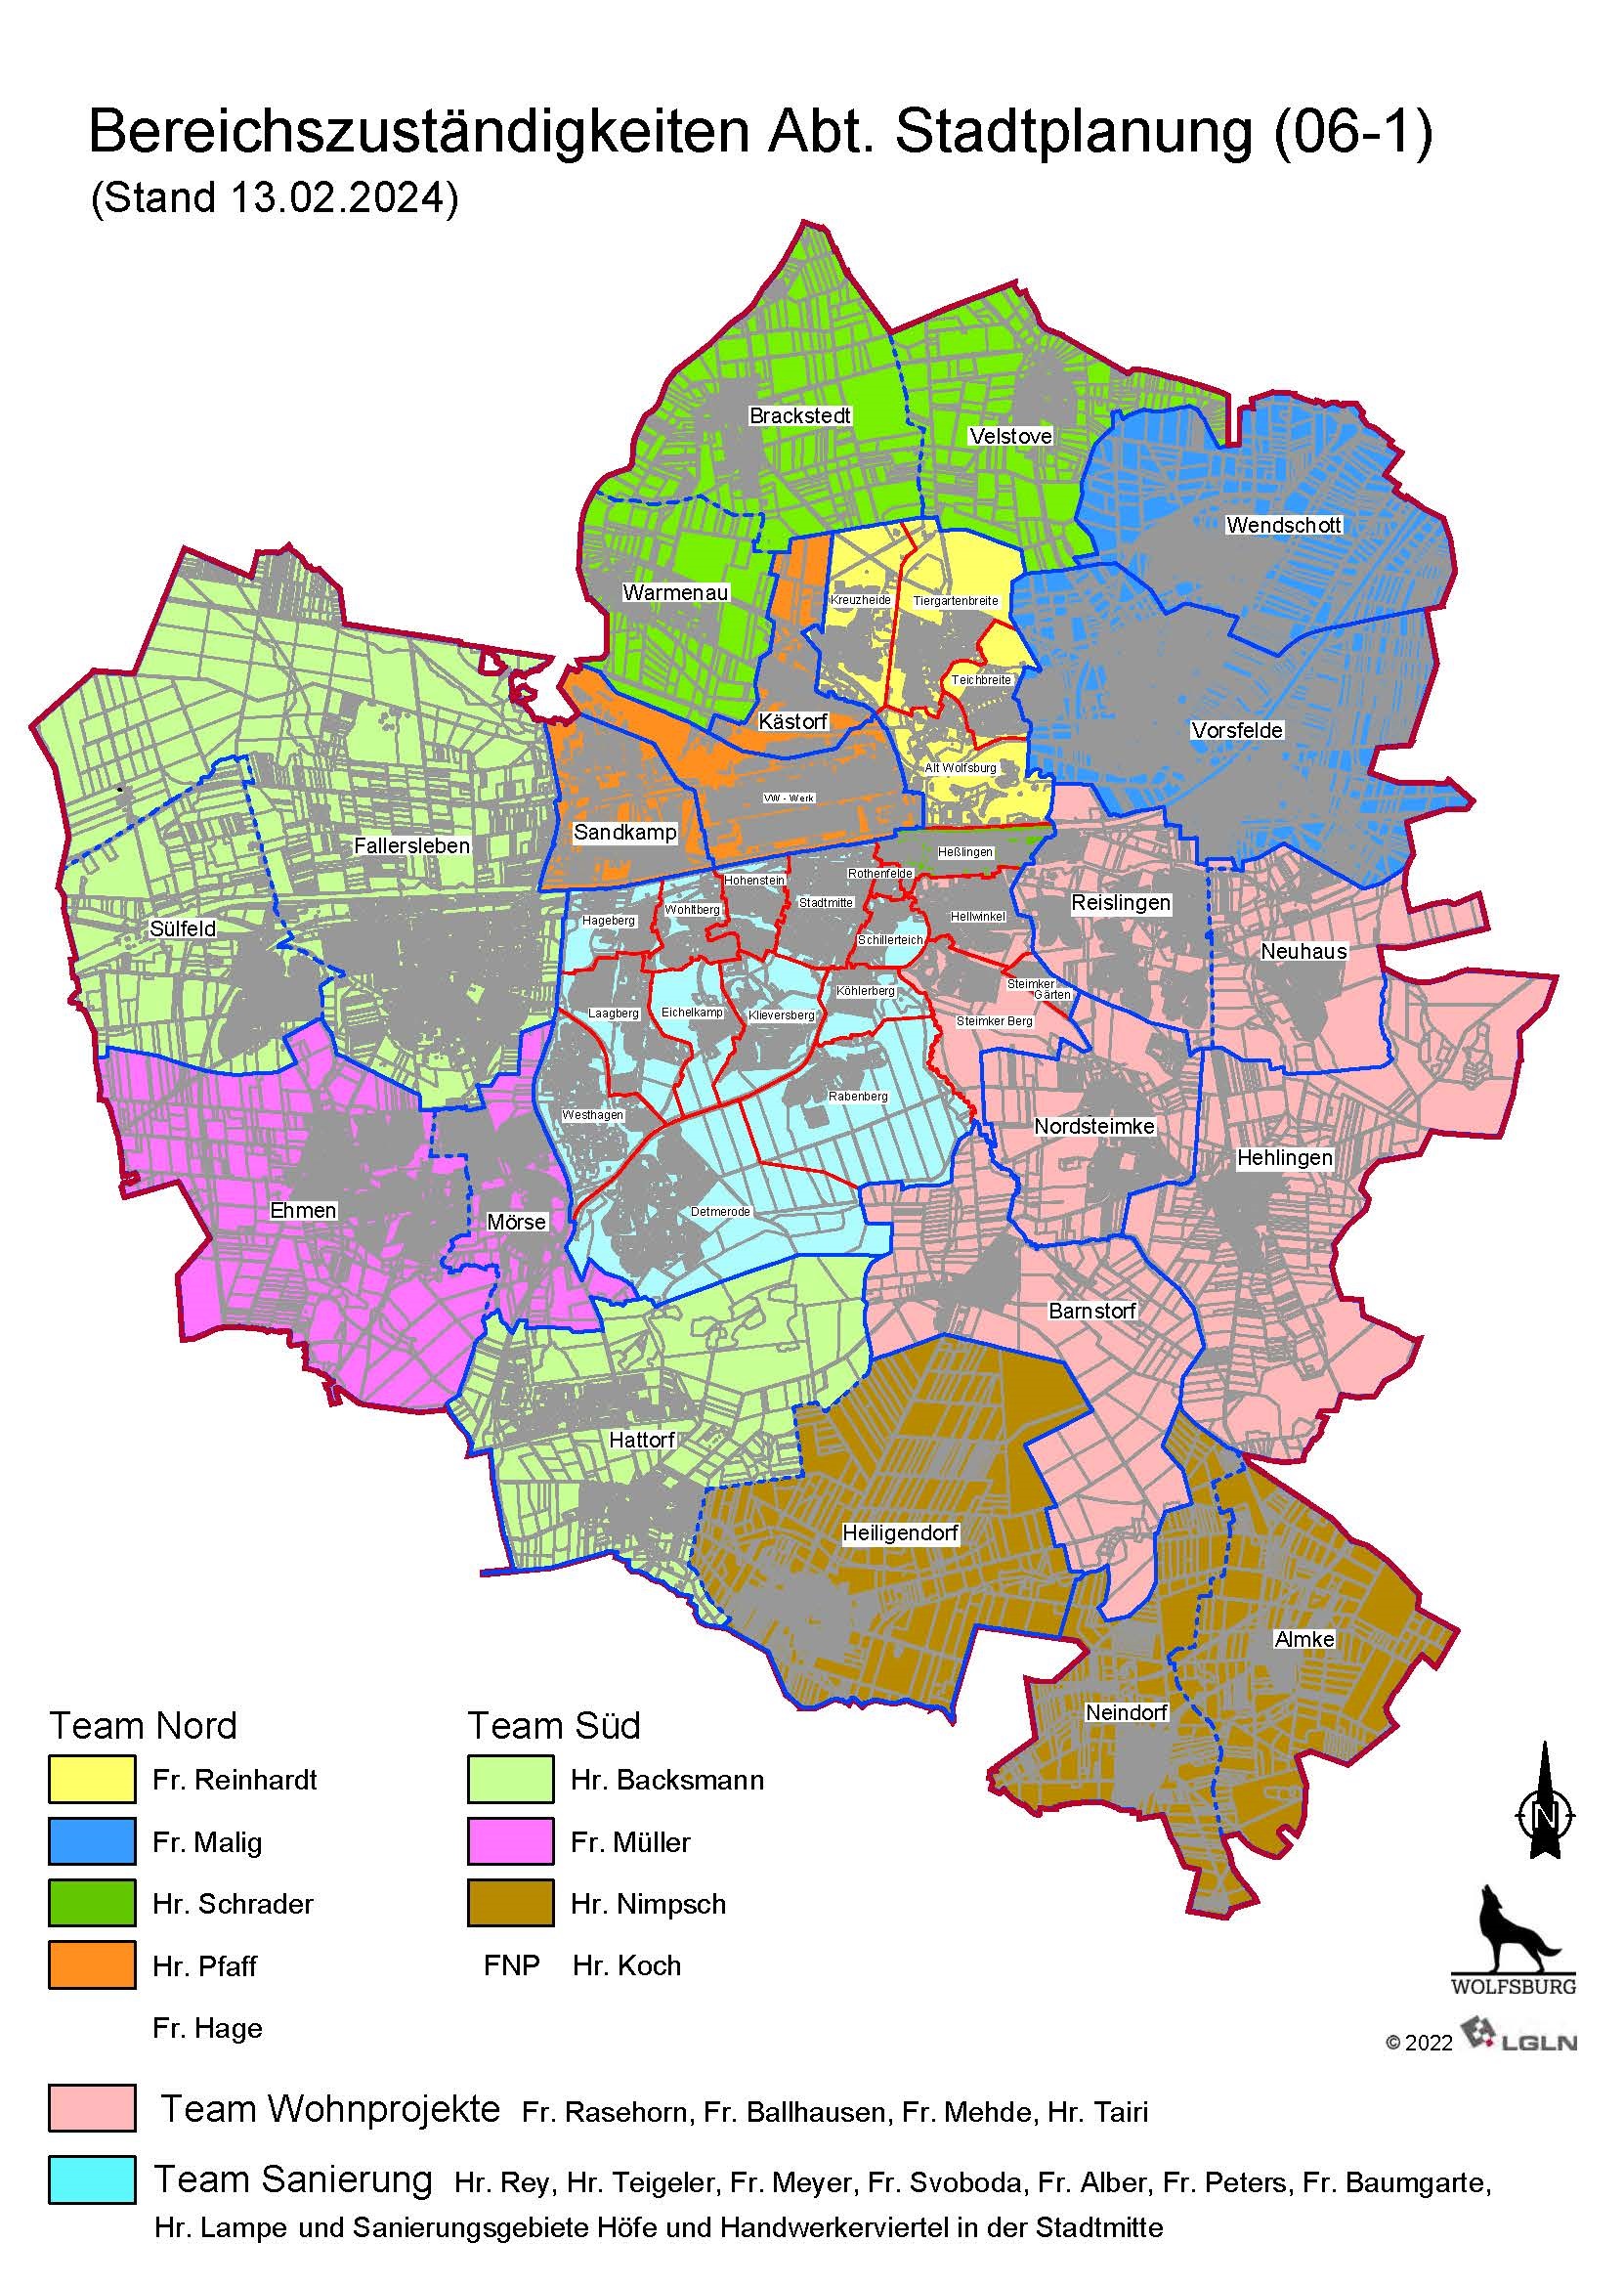 Bereichszuständigkeiten der Abteilung Stadtplanung